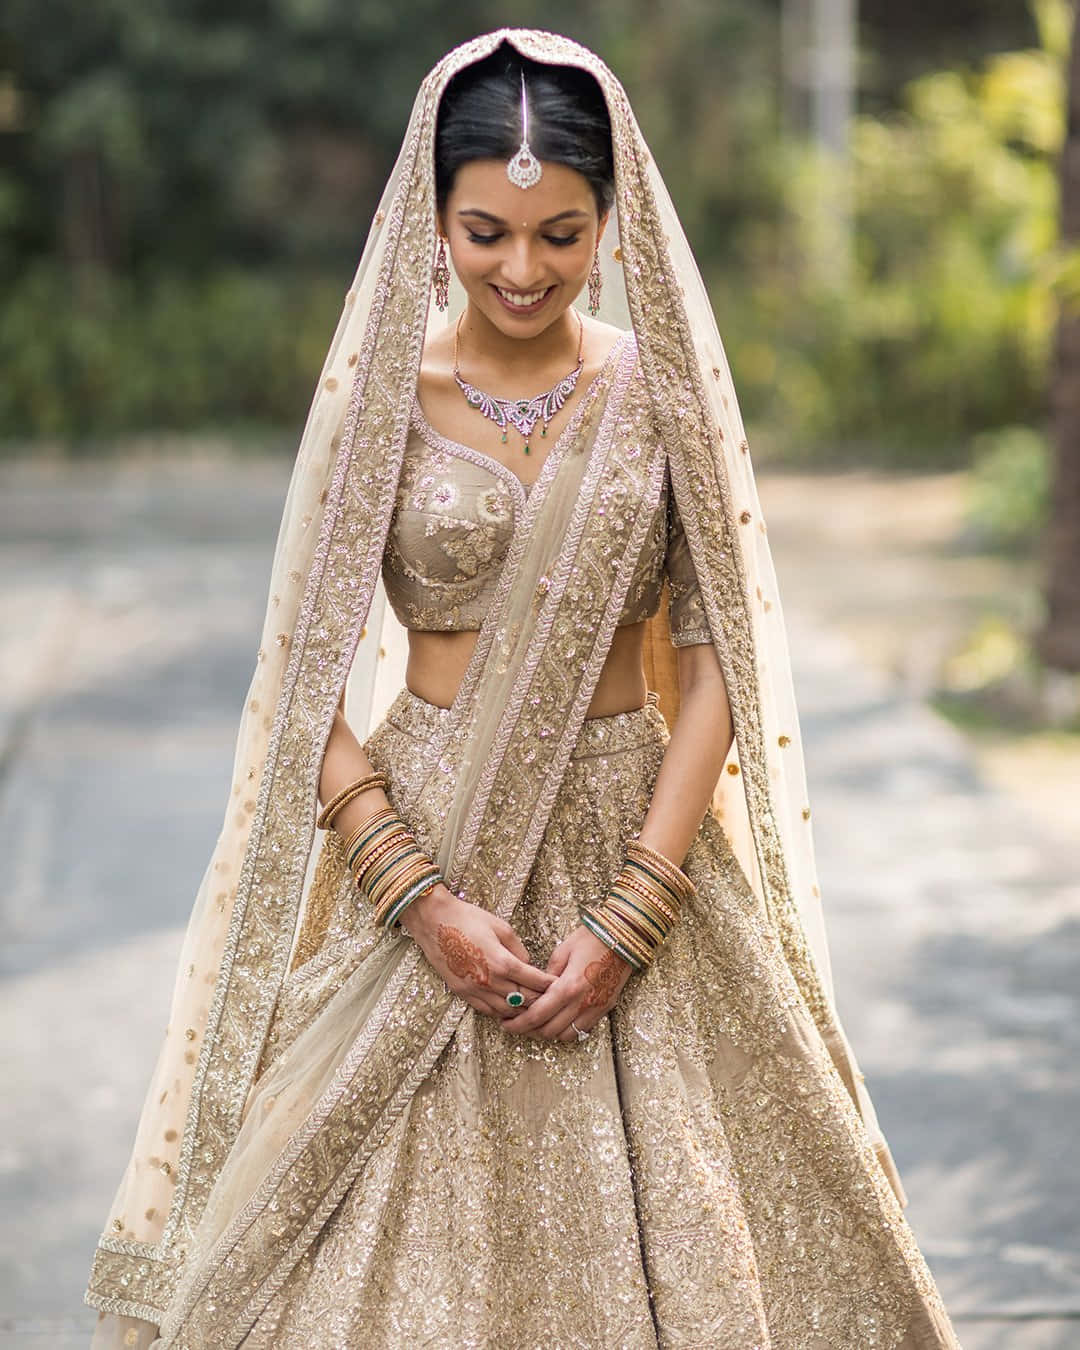 Imagende Una Novia India Llevando Un Vestido Dorado.